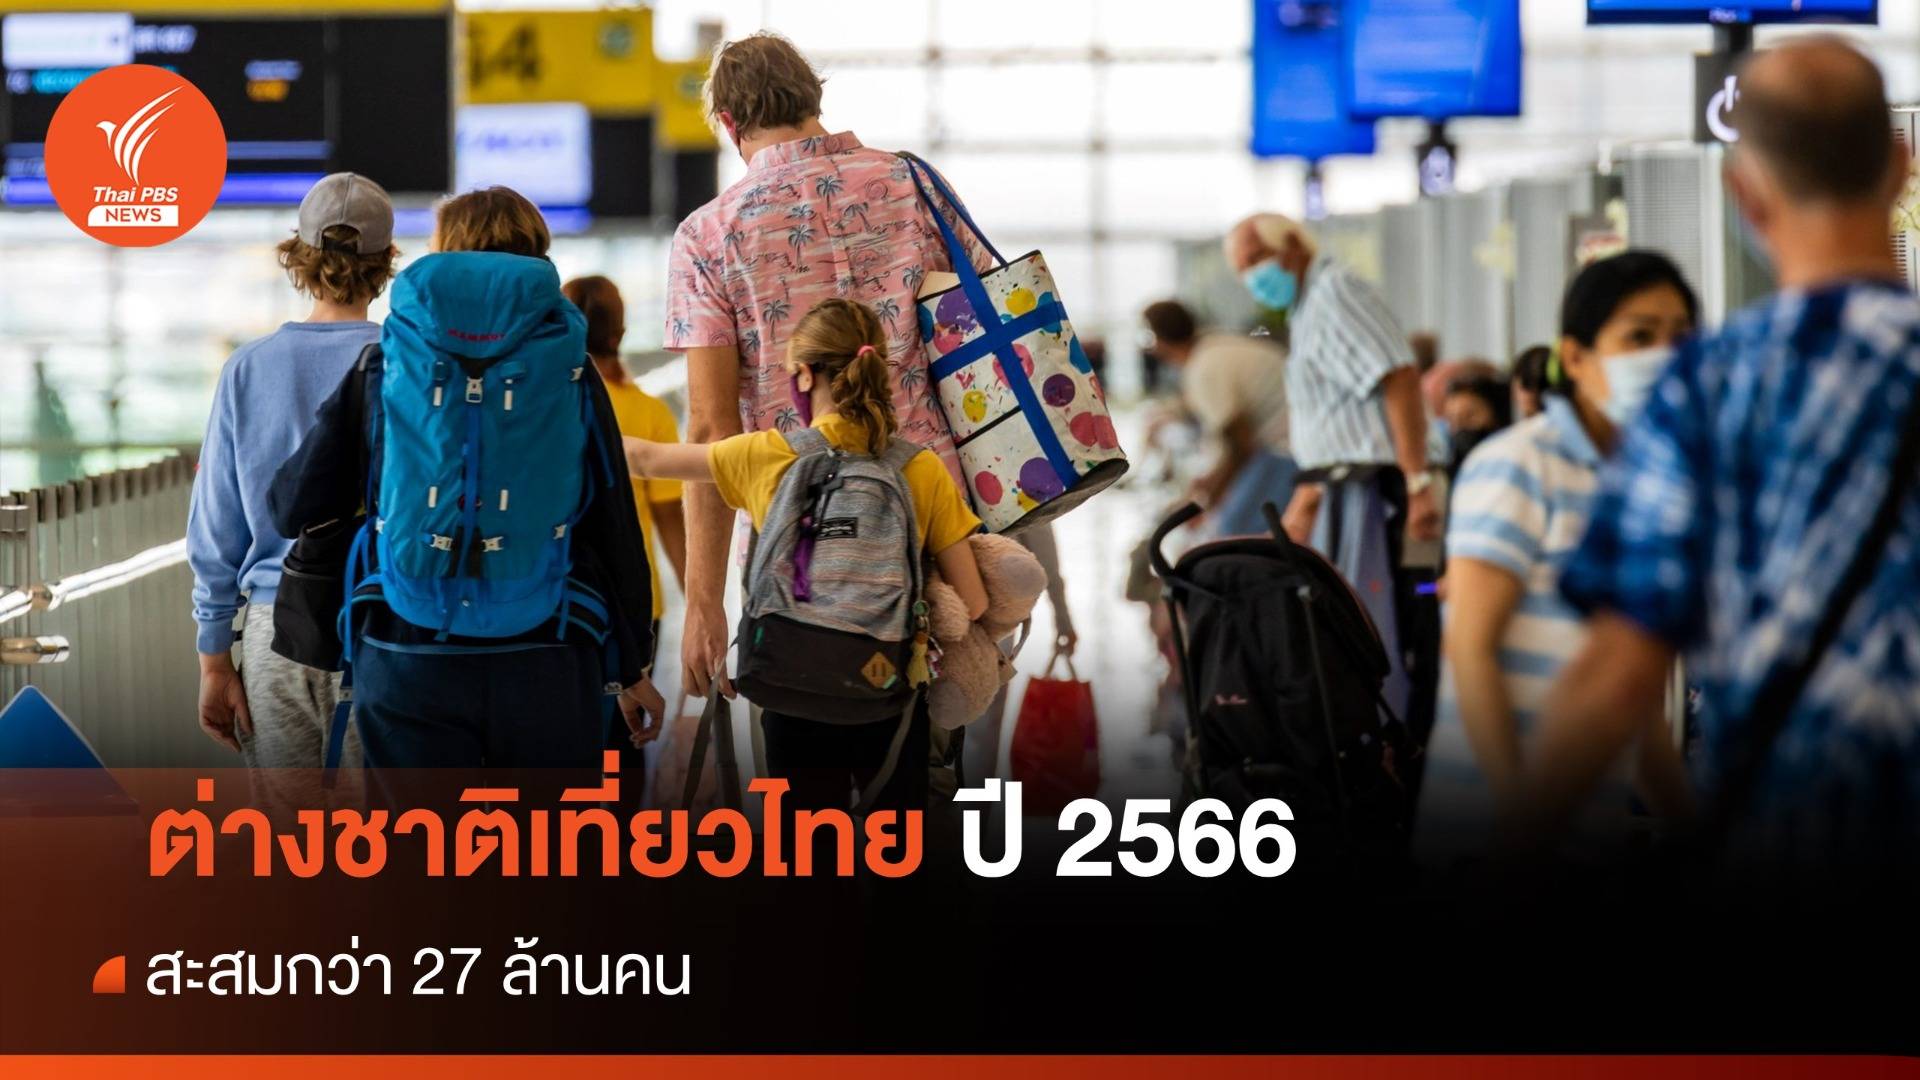 ต่างชาติเที่ยวไทยปี 2566 สะสมกว่า 27 ล้านคน มาเลเซียมากสุด